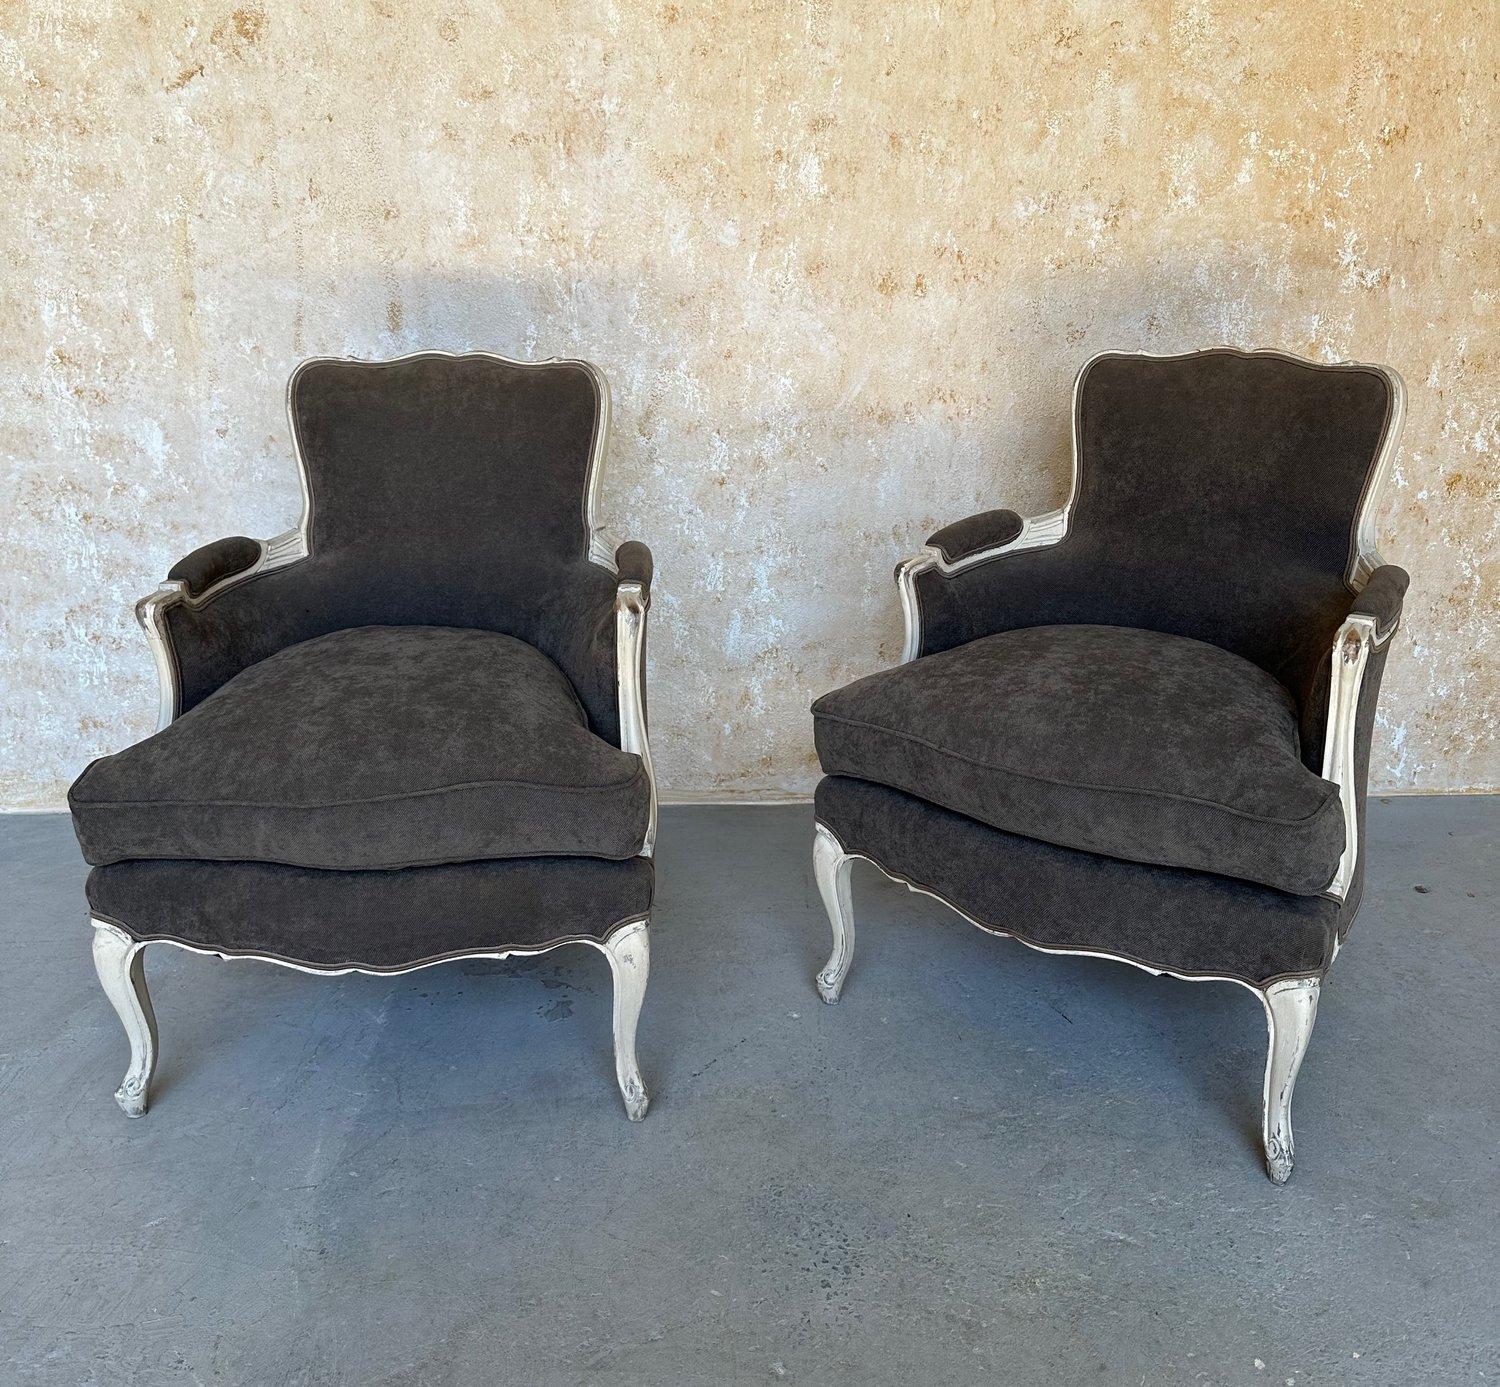 Ein elegantes Paar französischer Sessel im Louis XV-Stil, gepolstert mit grauem Stoff und passenden Paspeln. Die kunstvoll geschnitzten Holzrahmen sind meisterhaft mit einer weißen Patina überzogen, die einen schönen Kontrast zu den grauen Polstern